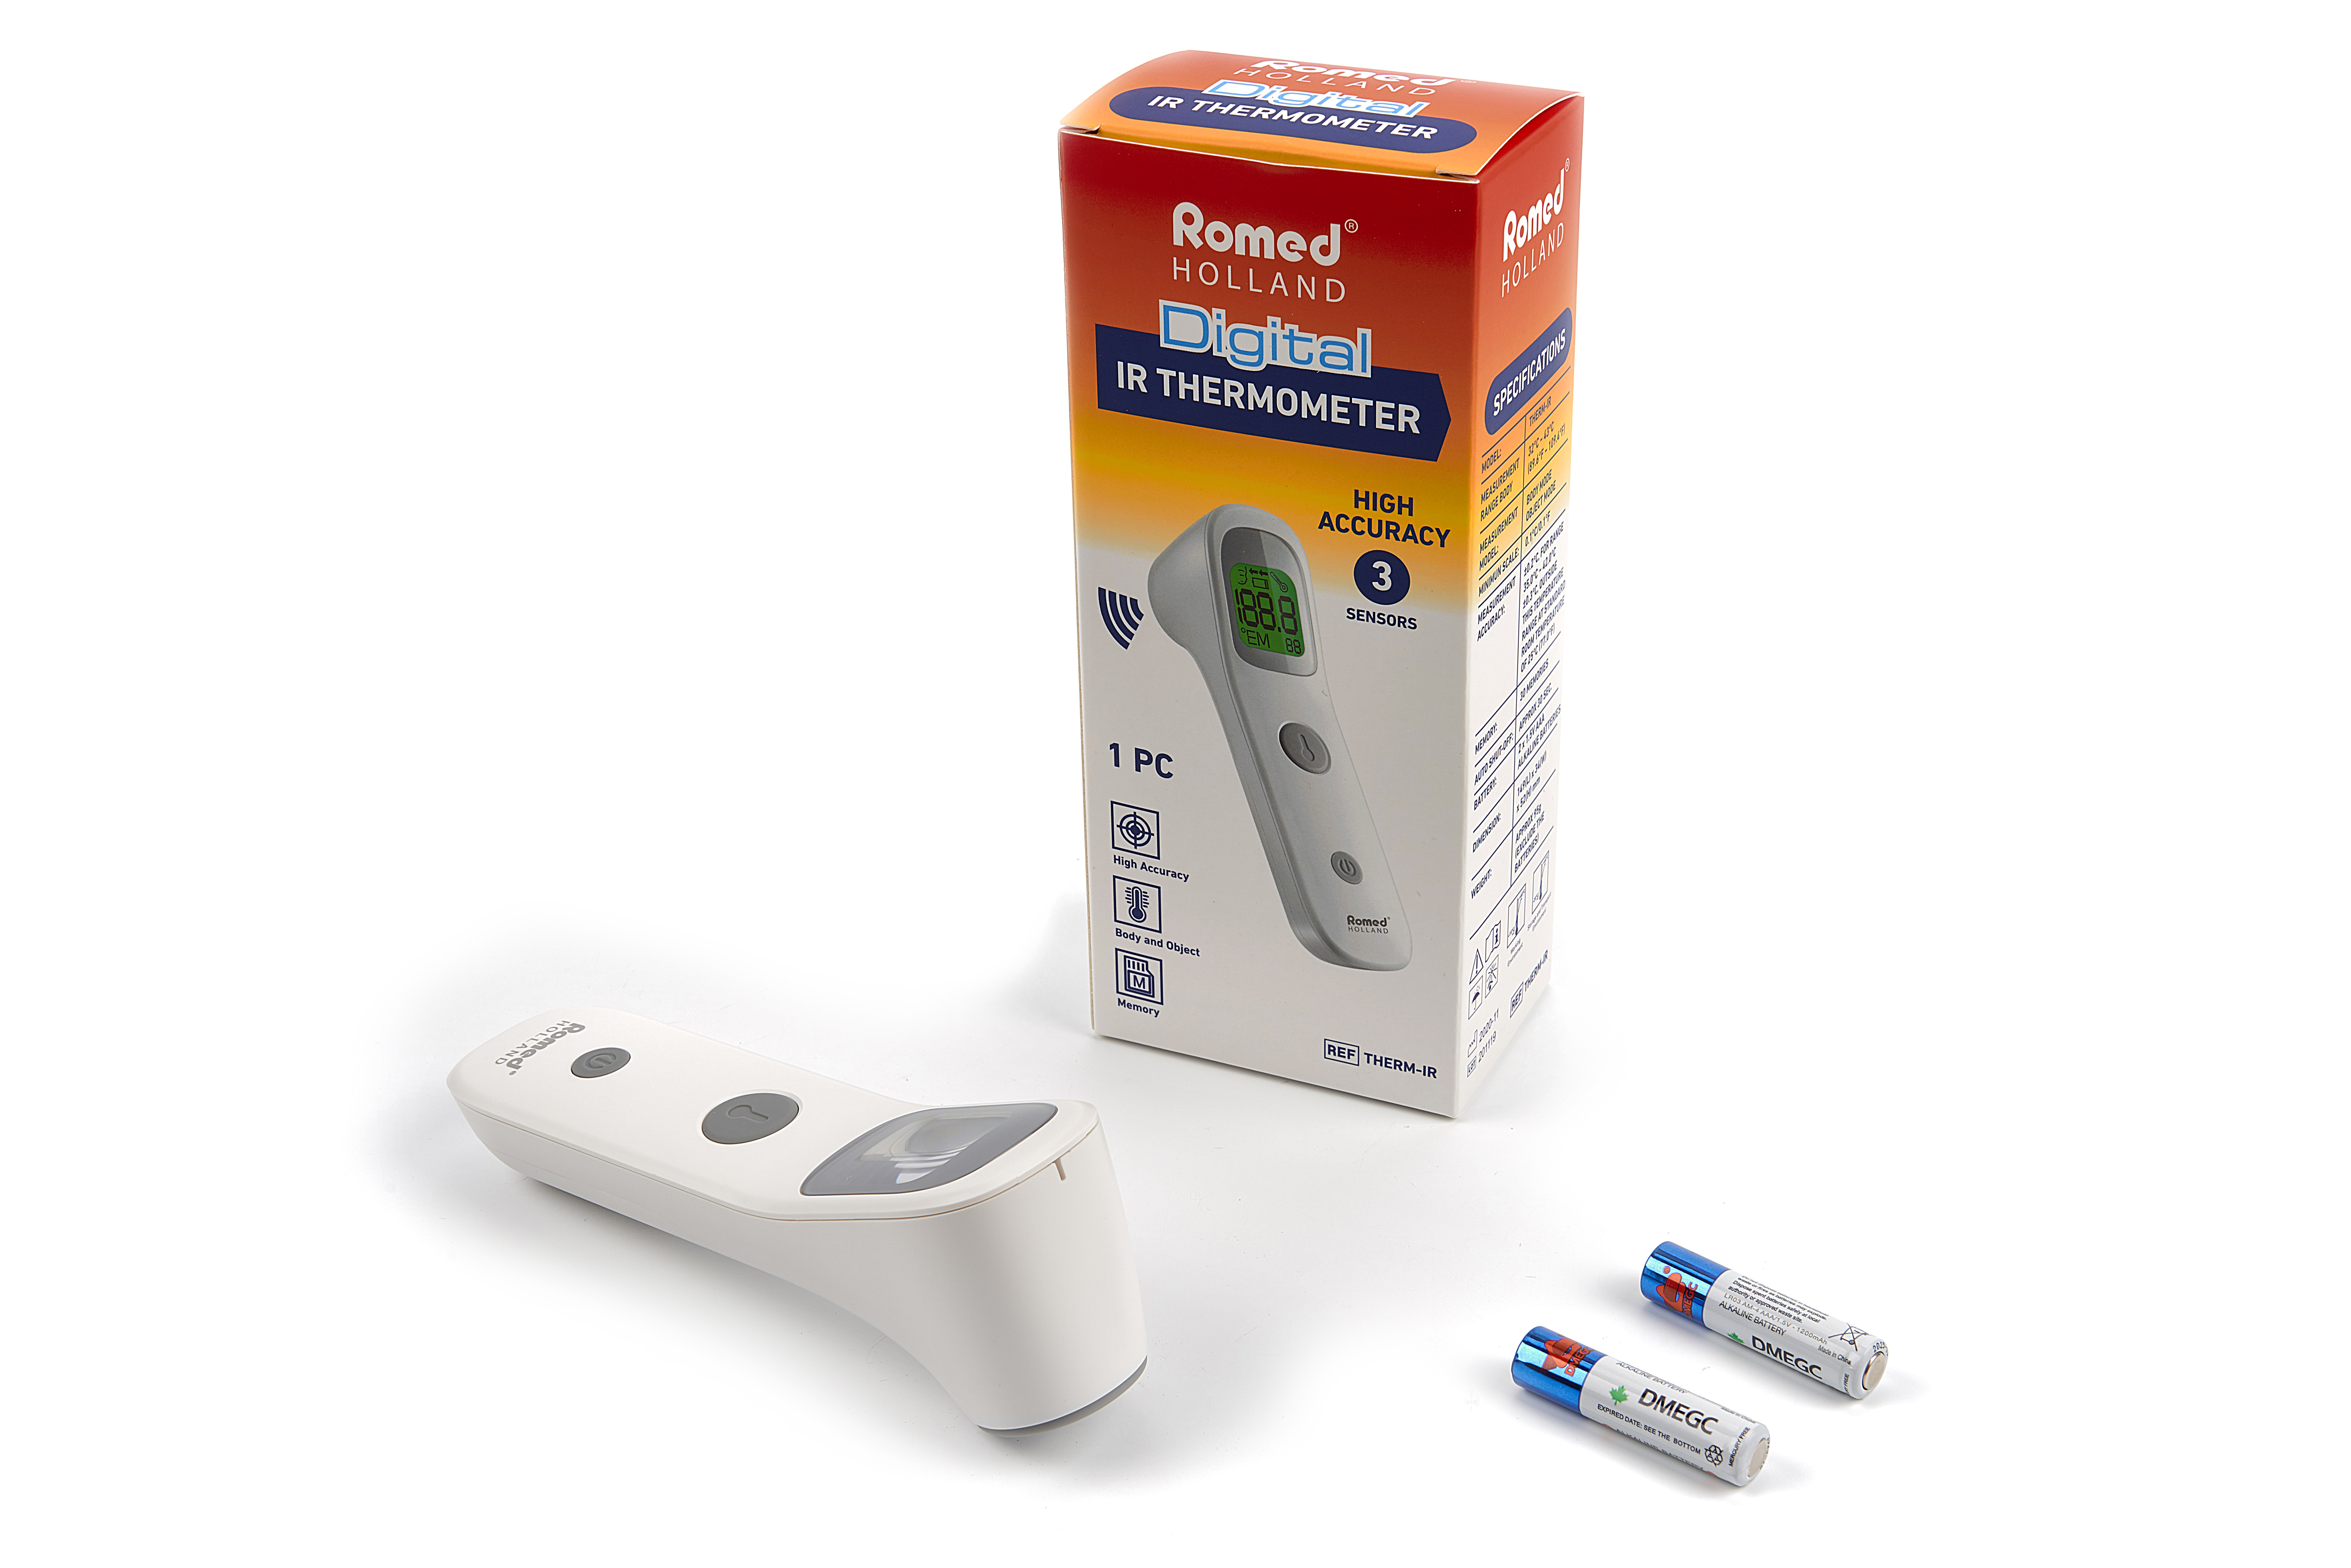 THERM-IR Romed digitale infrarood thermometer, contactloos, per stuk in een verkoopverpakking, 50 stuks in een karton.